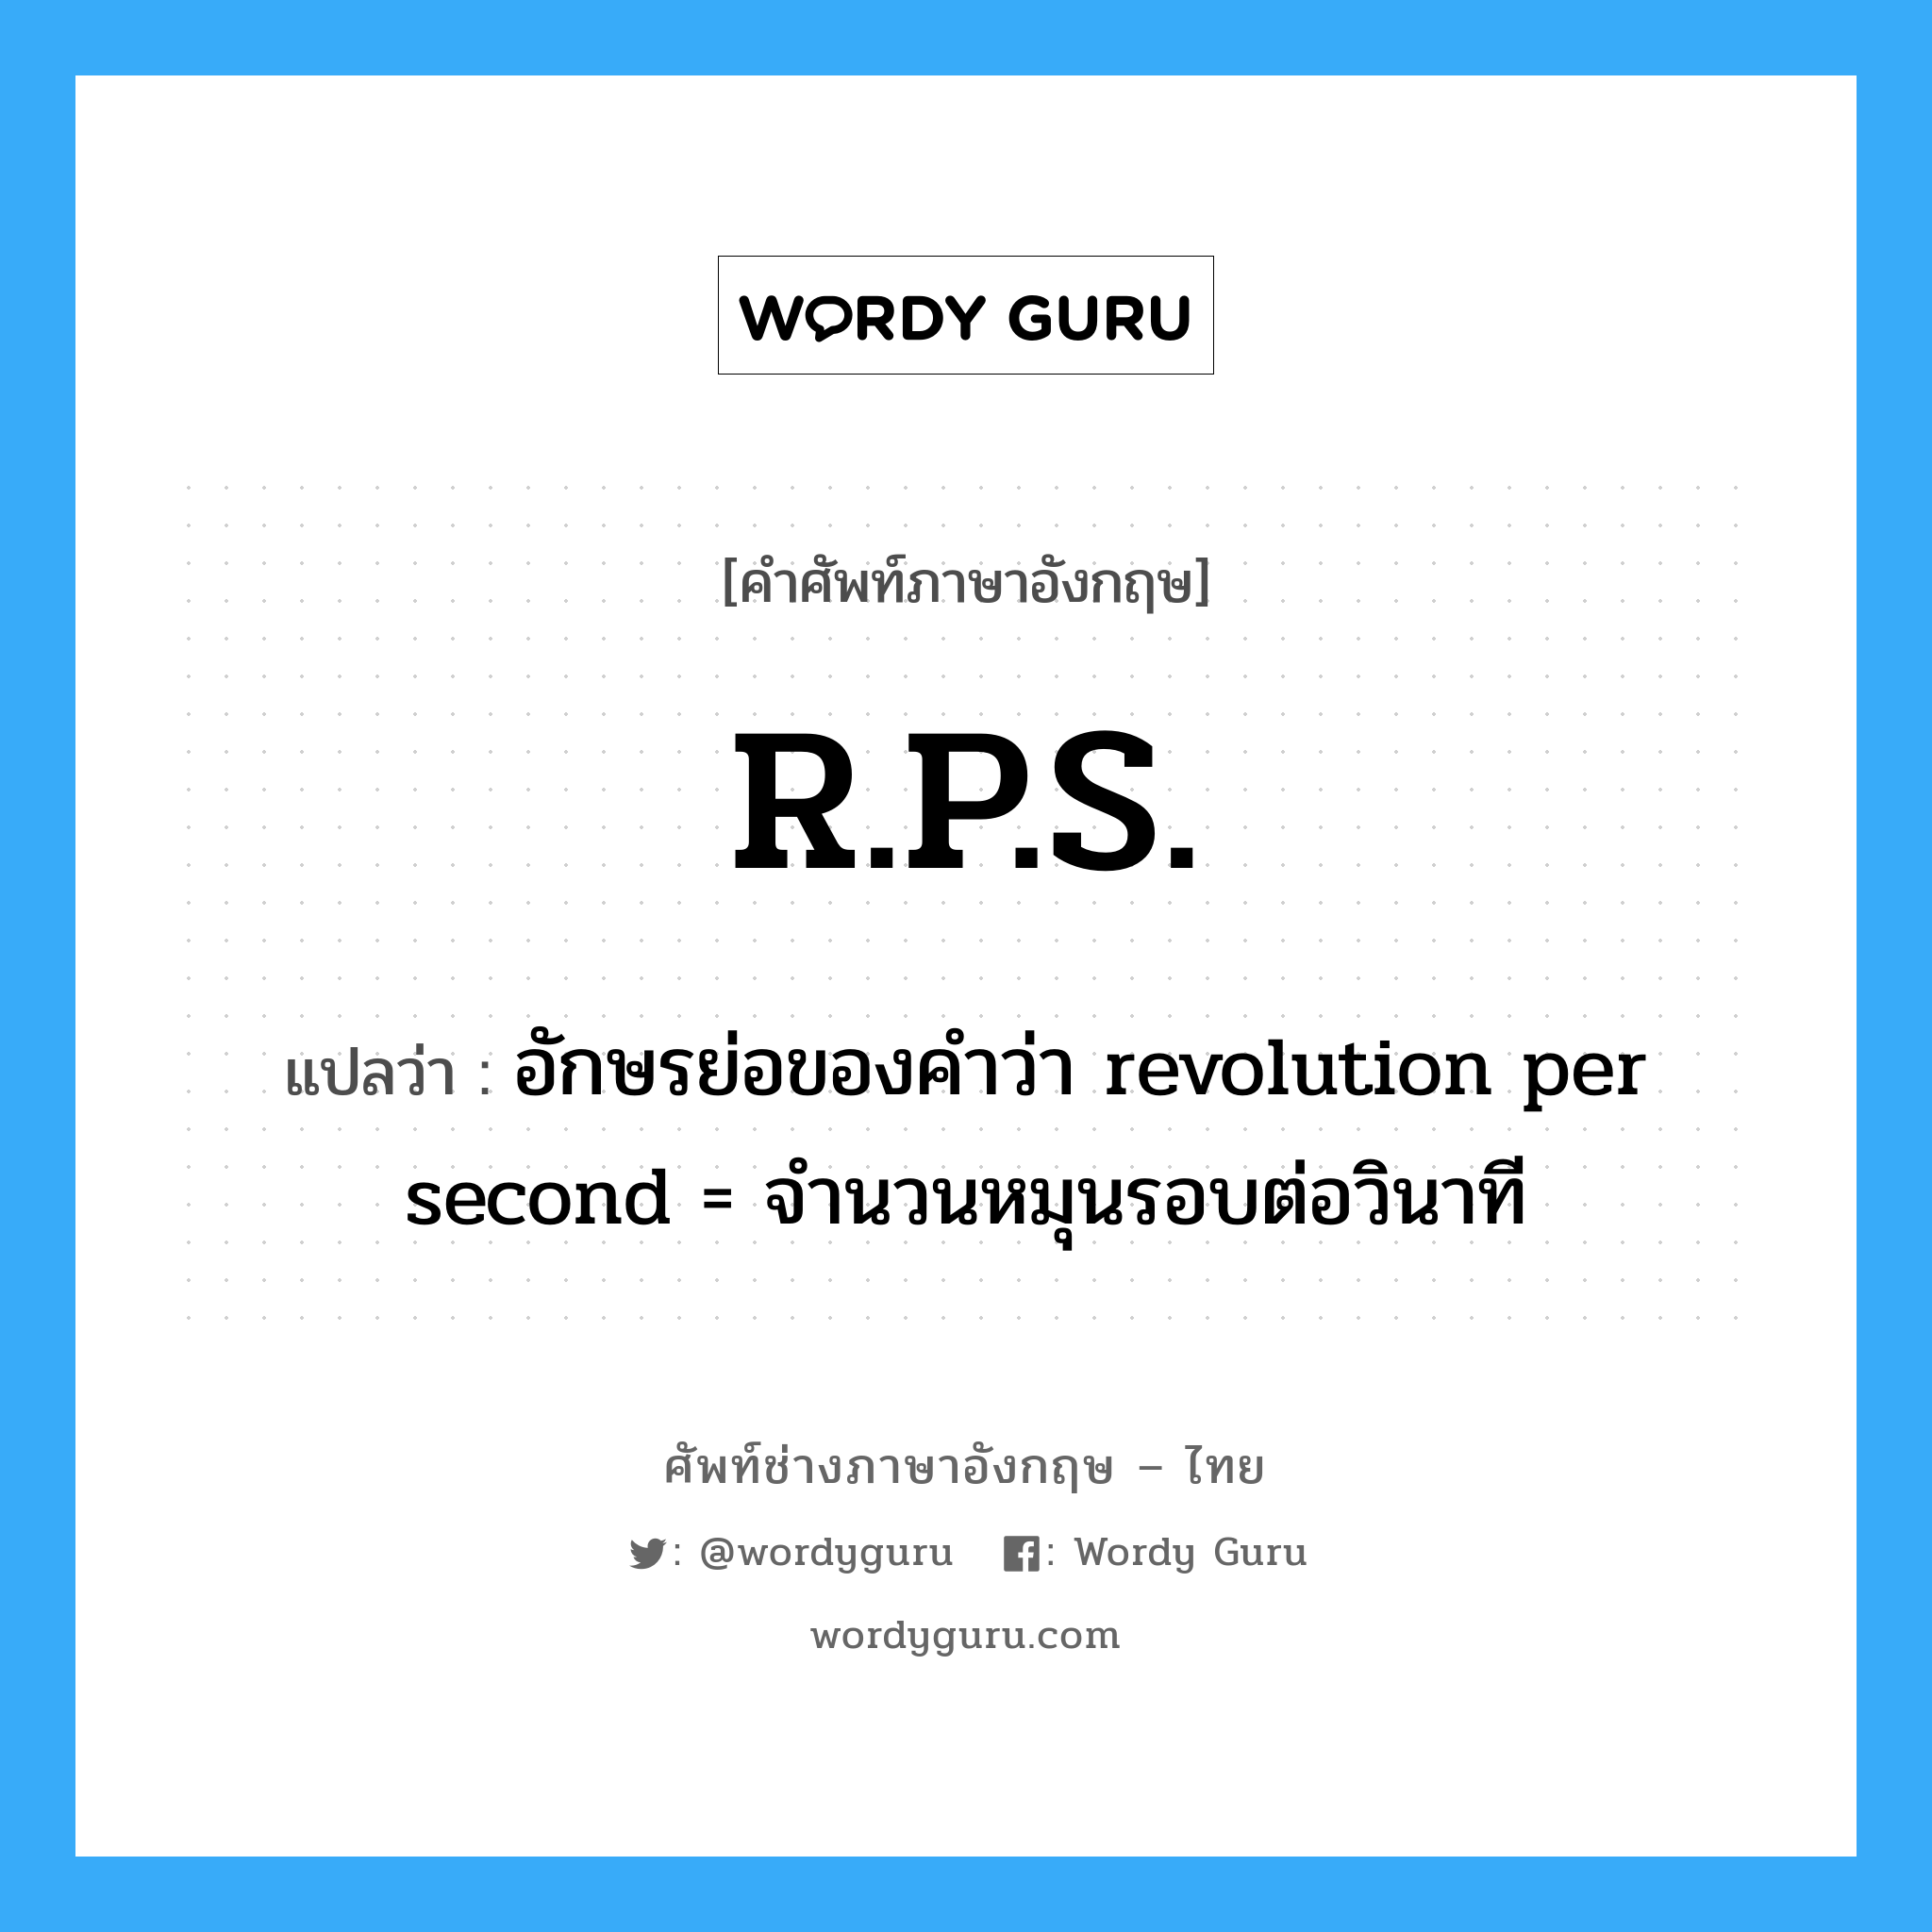 อักษรย่อของคำว่า revolution per second = จำนวนหมุนรอบต่อวินาที ภาษาอังกฤษ?, คำศัพท์ช่างภาษาอังกฤษ - ไทย อักษรย่อของคำว่า revolution per second = จำนวนหมุนรอบต่อวินาที คำศัพท์ภาษาอังกฤษ อักษรย่อของคำว่า revolution per second = จำนวนหมุนรอบต่อวินาที แปลว่า R.P.S.